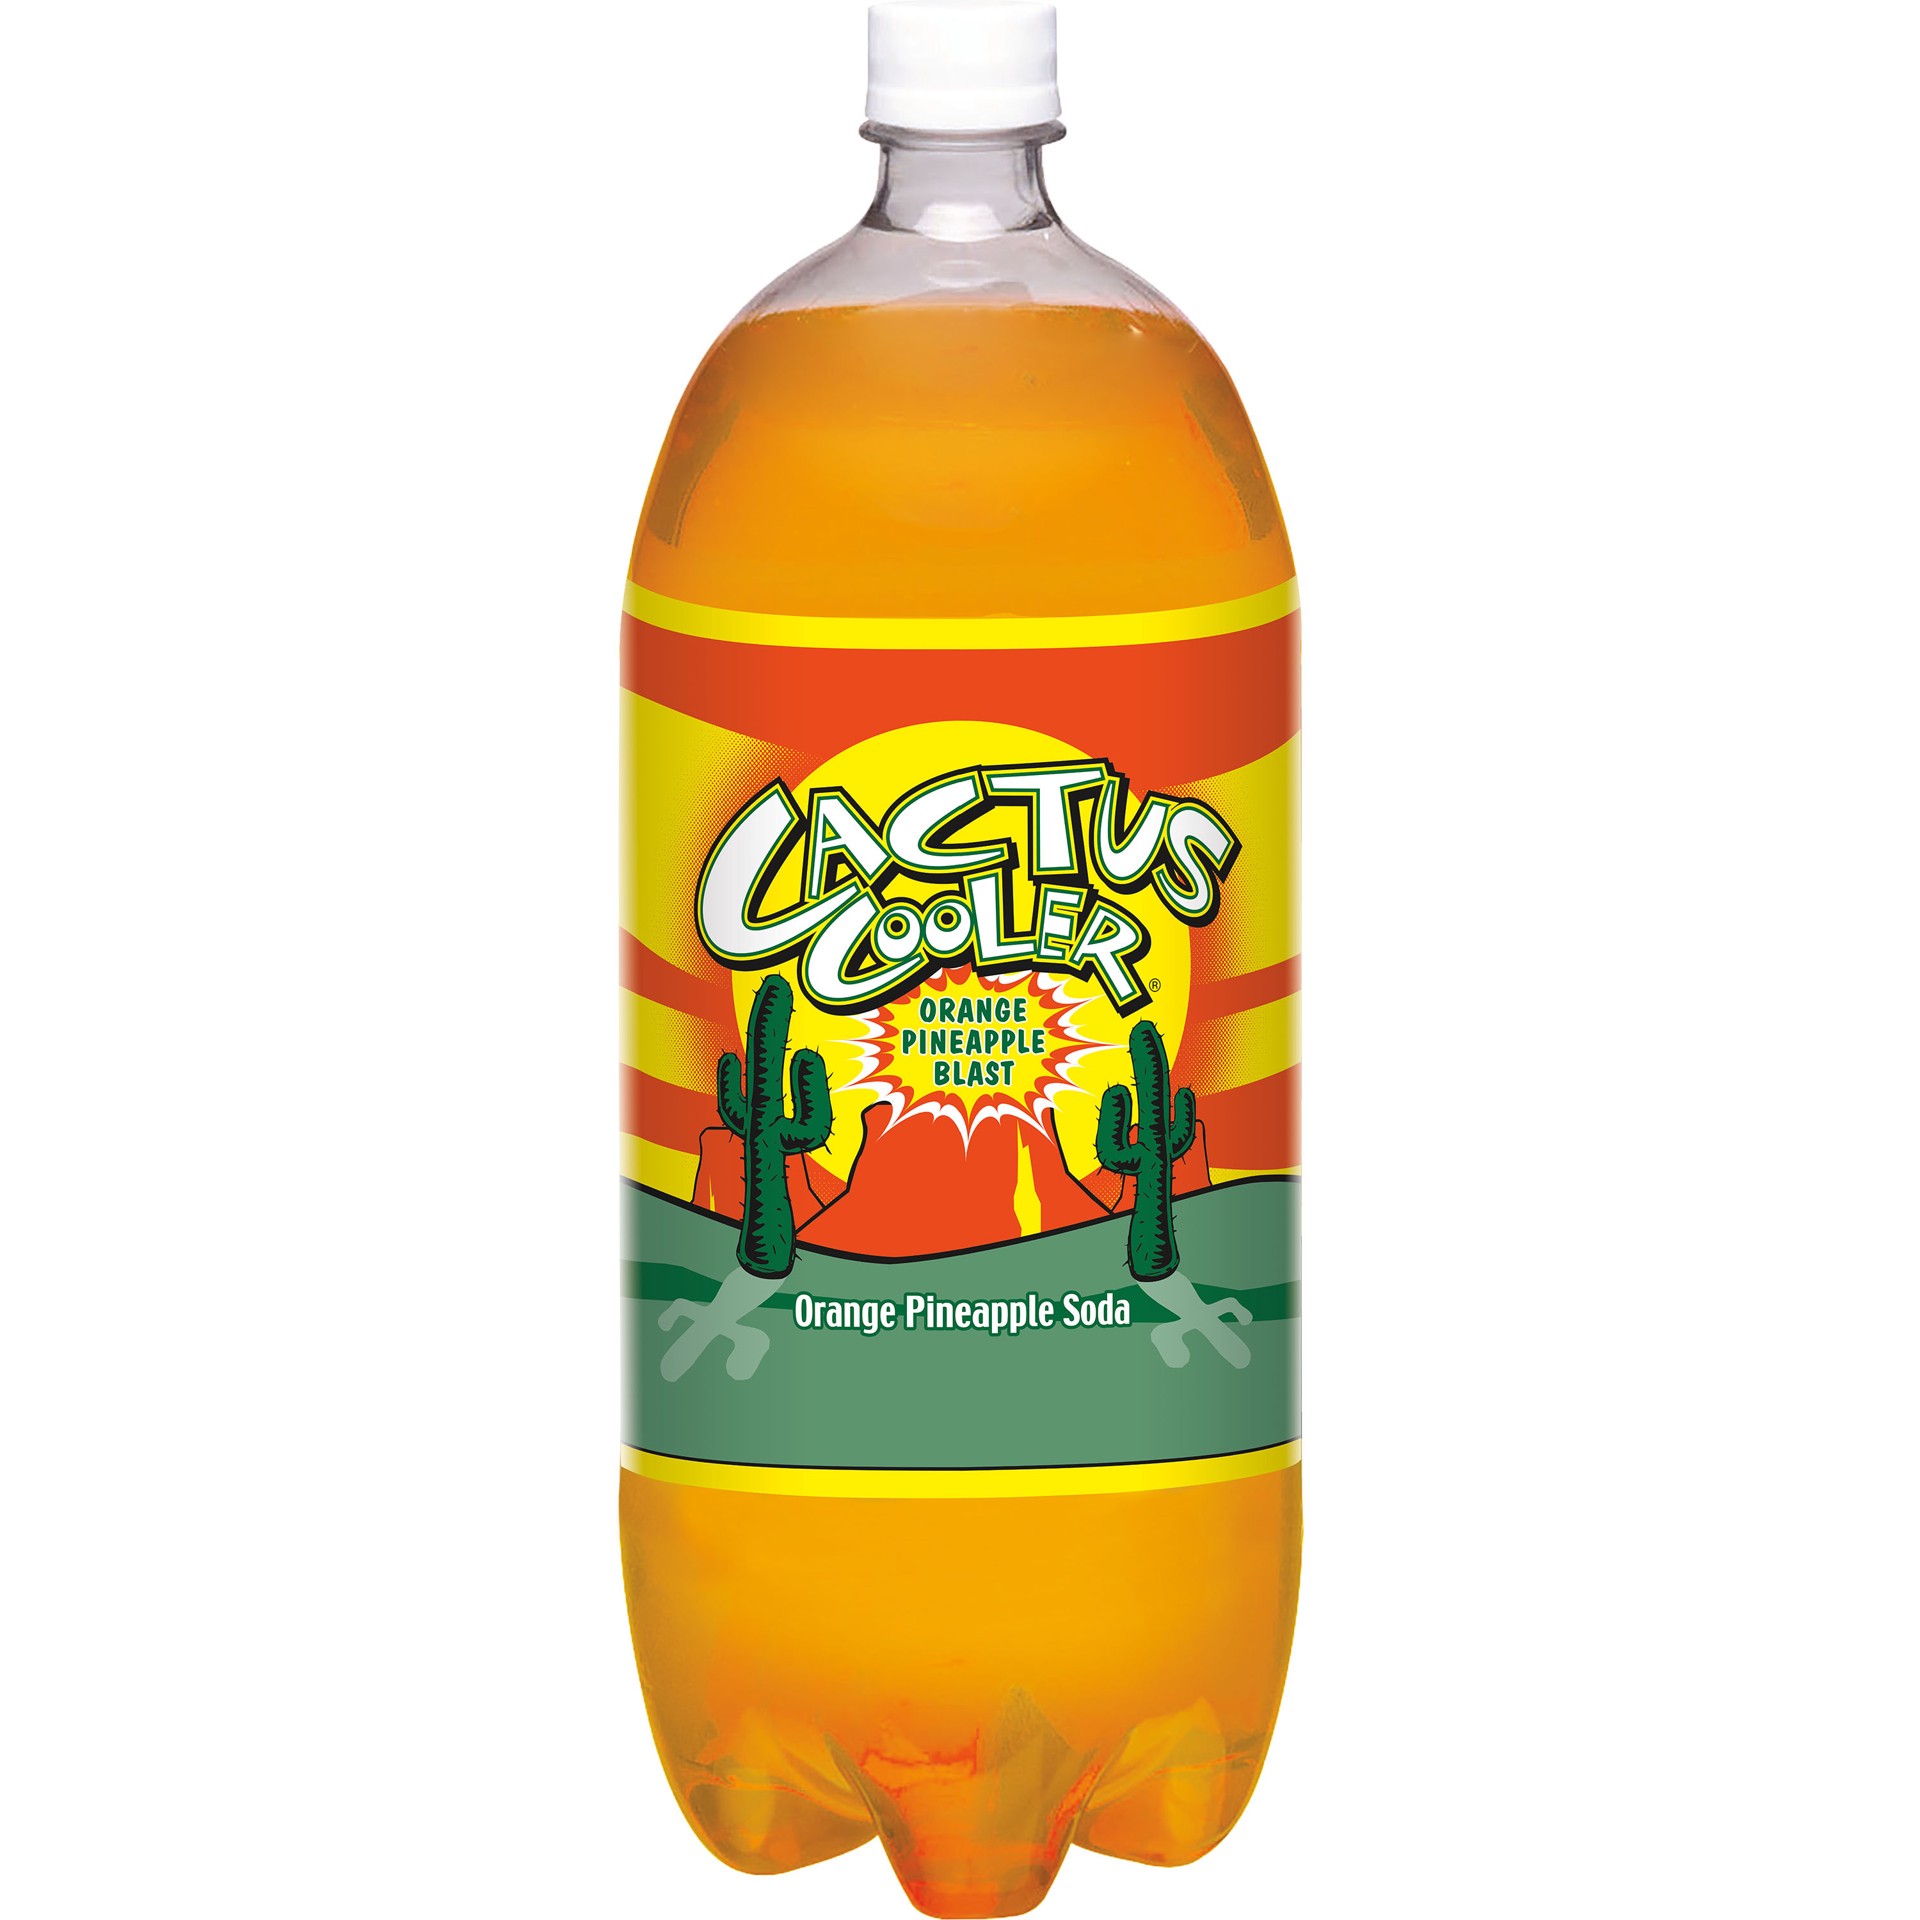 slide 3 of 3, Cactus Cooler Orange Pineapple Soda Soda 2 lt, 2 liter